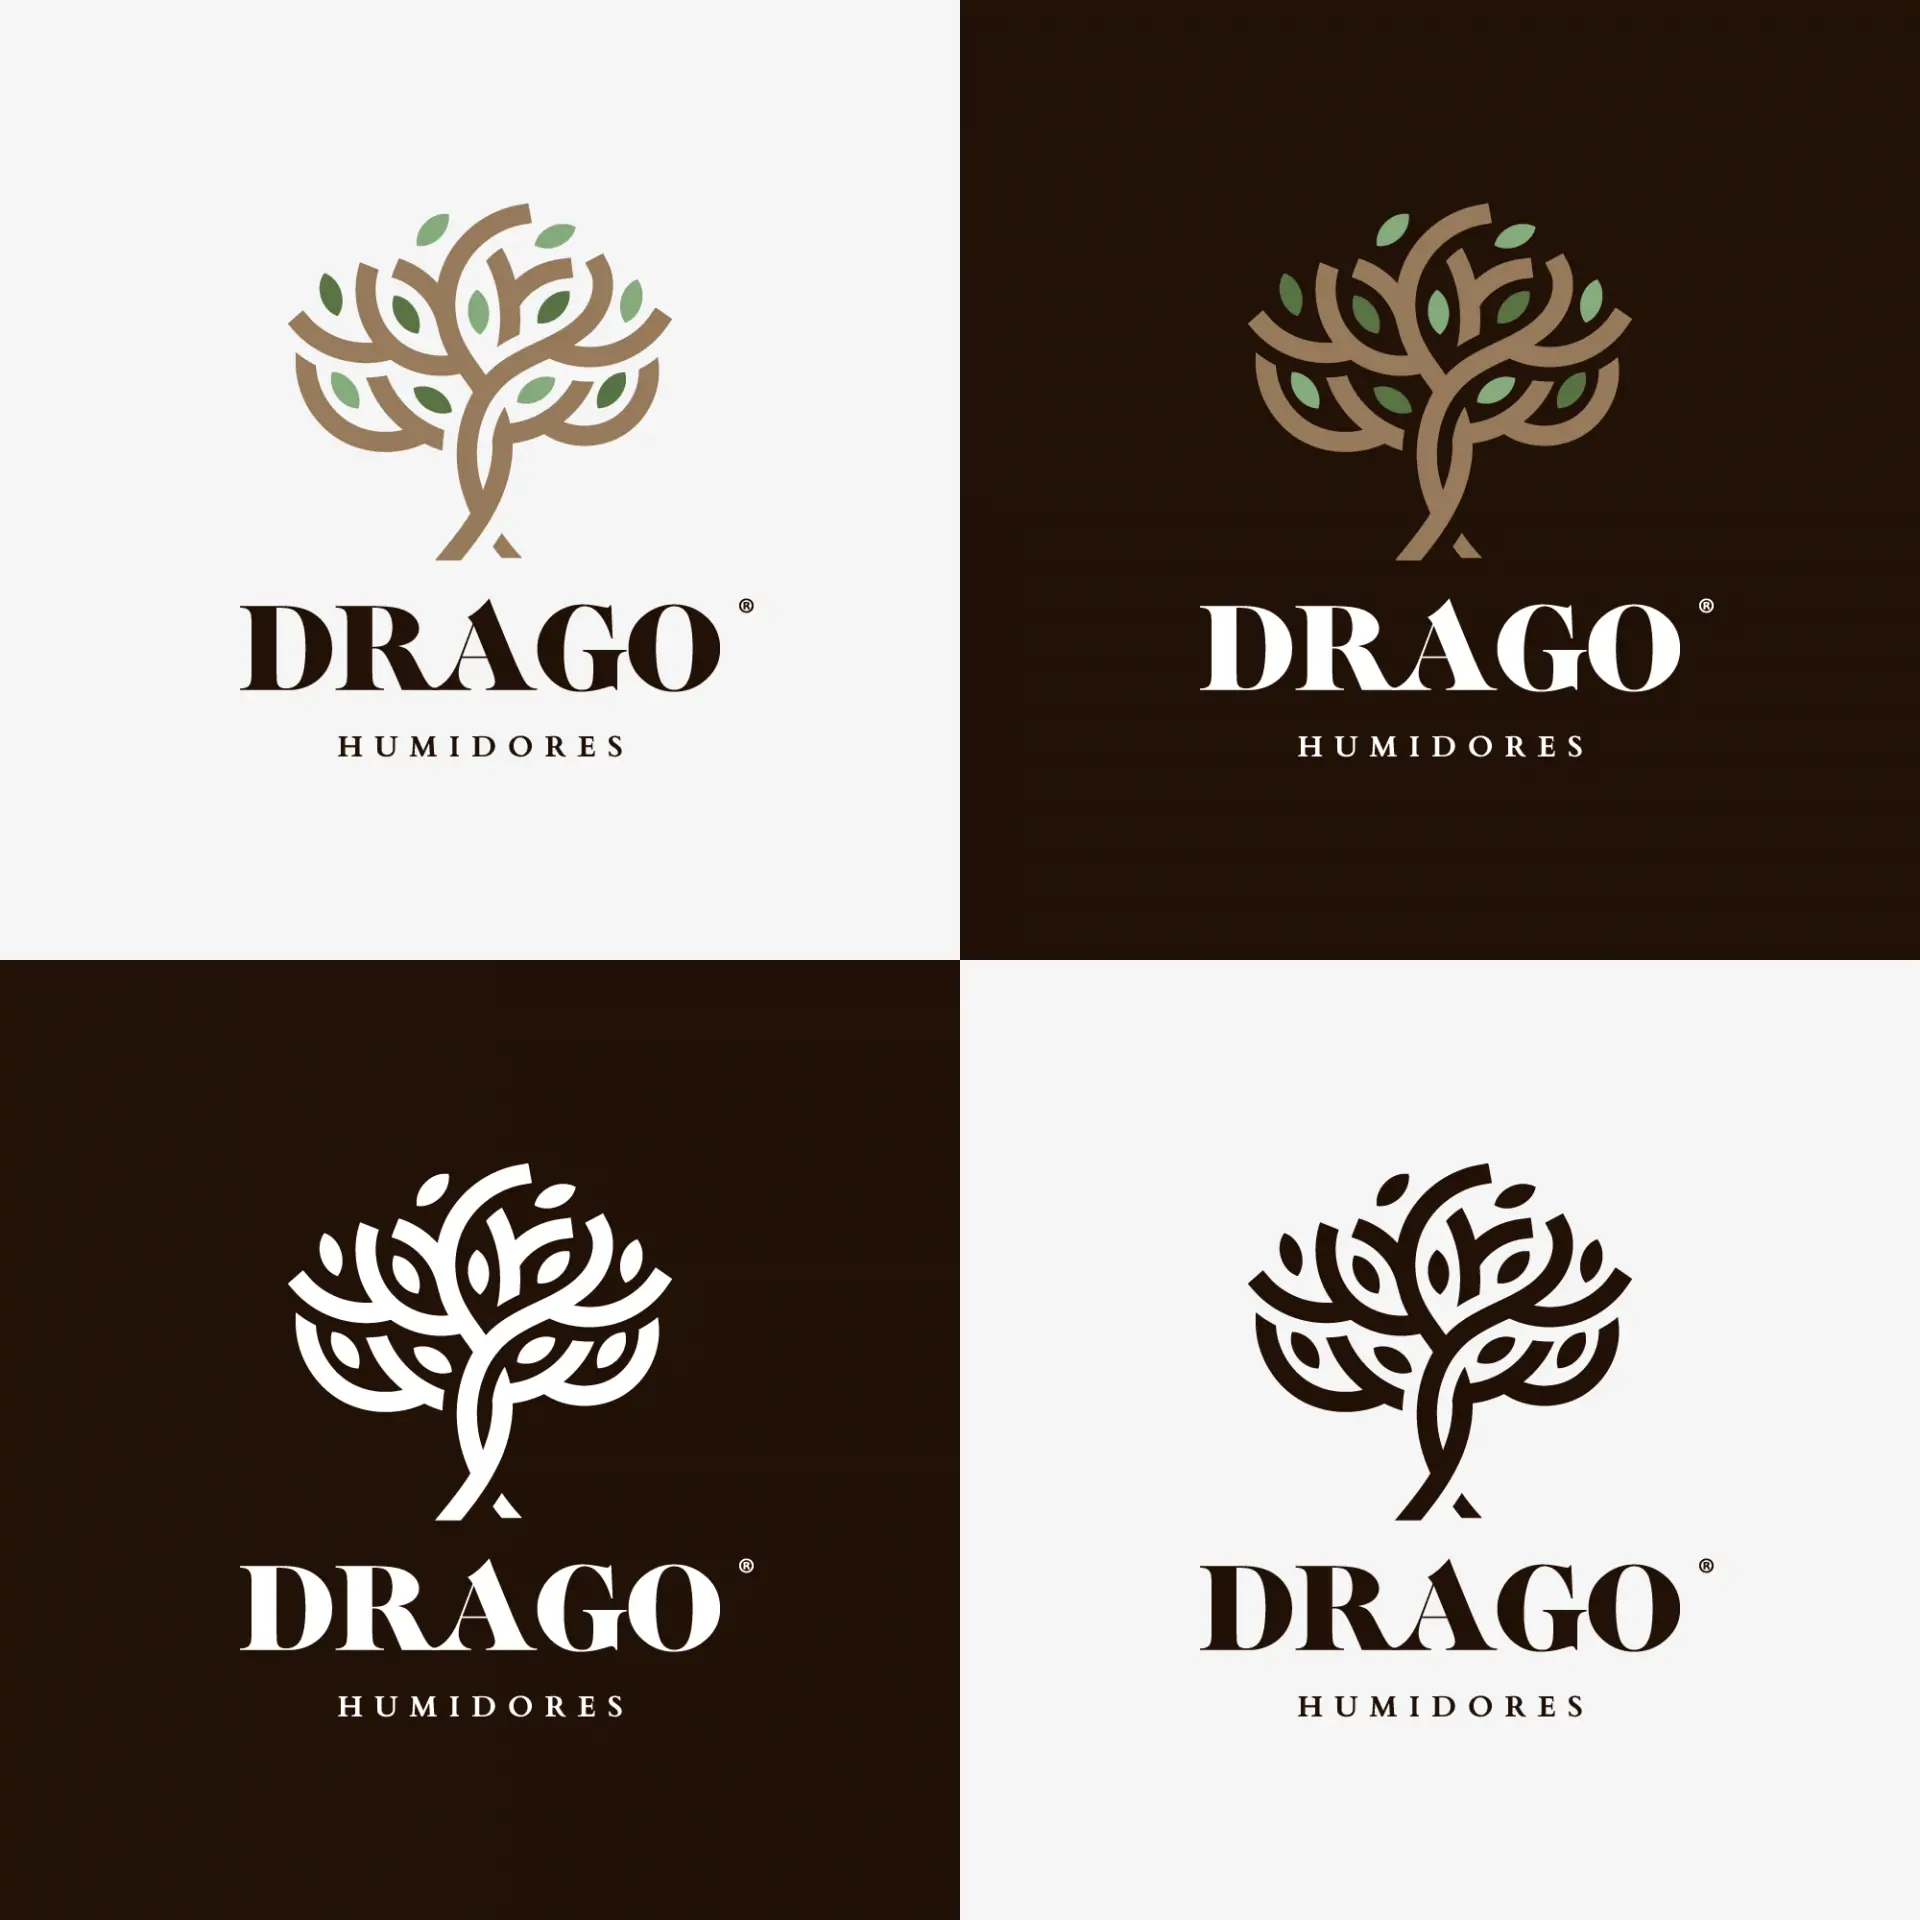 Diseño de logo Drago Humidores